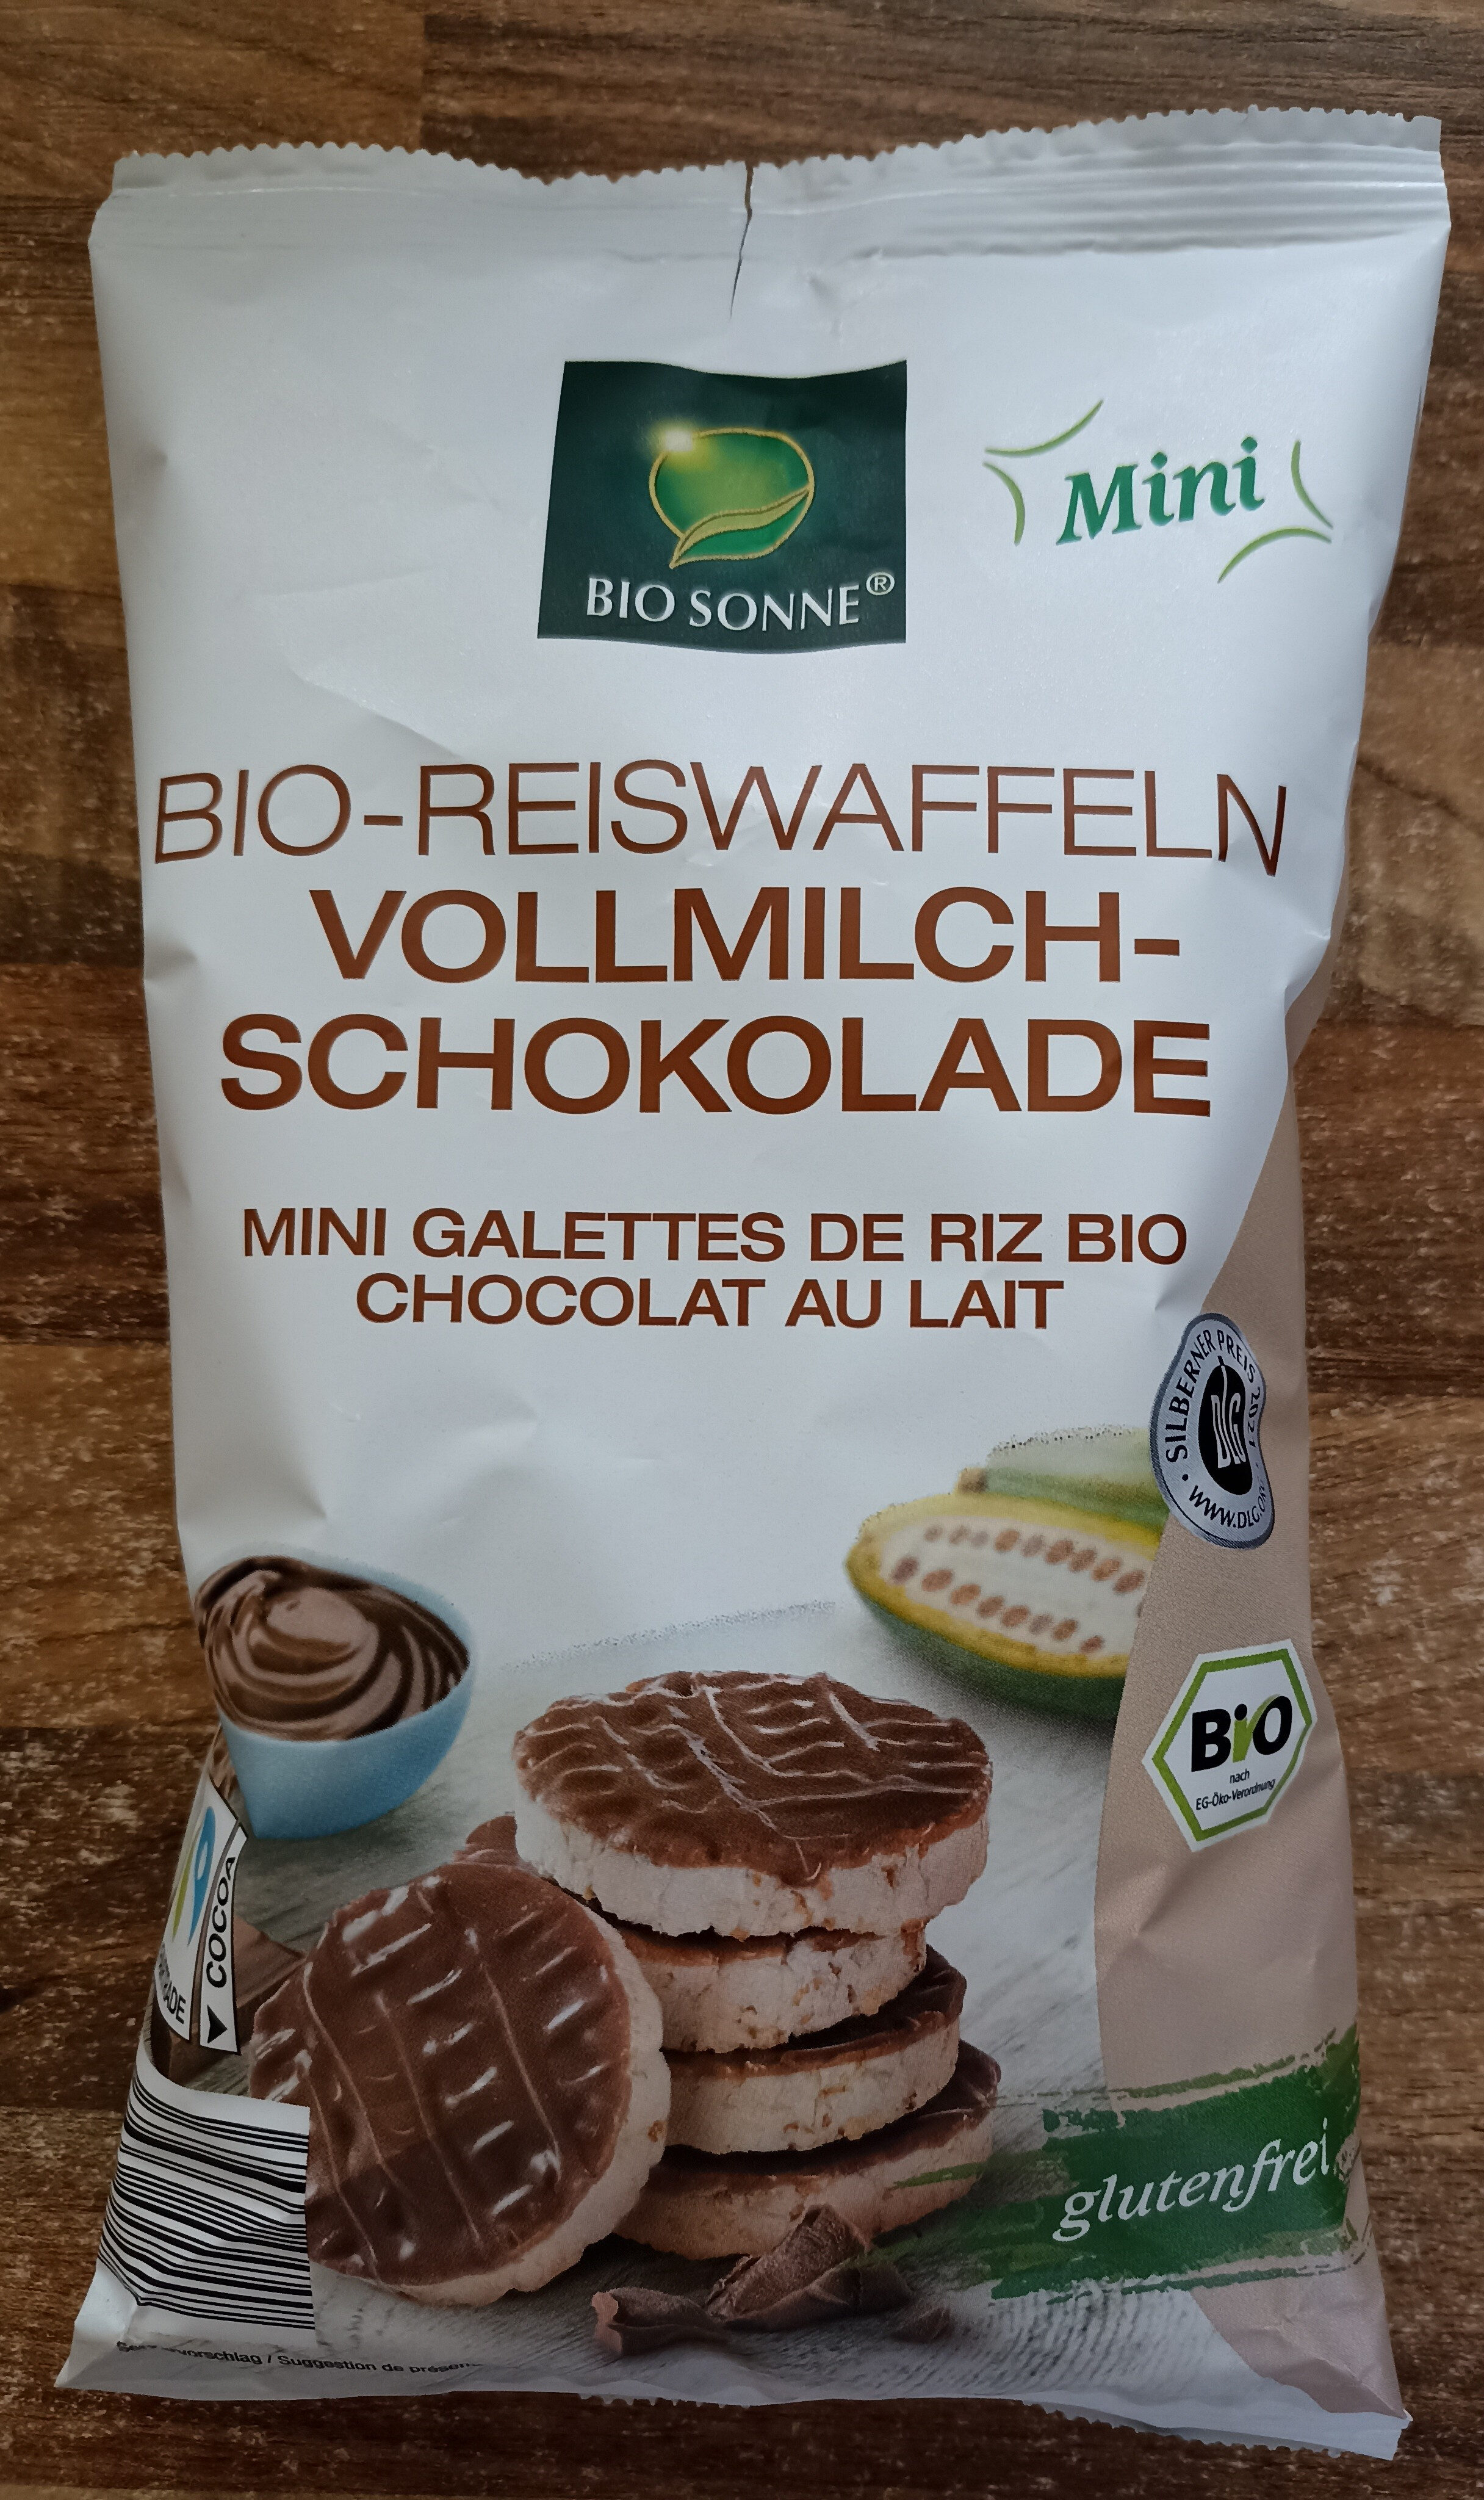 Bio-Reiswaffeln mini Vollmilch-Schokolade - Produkt